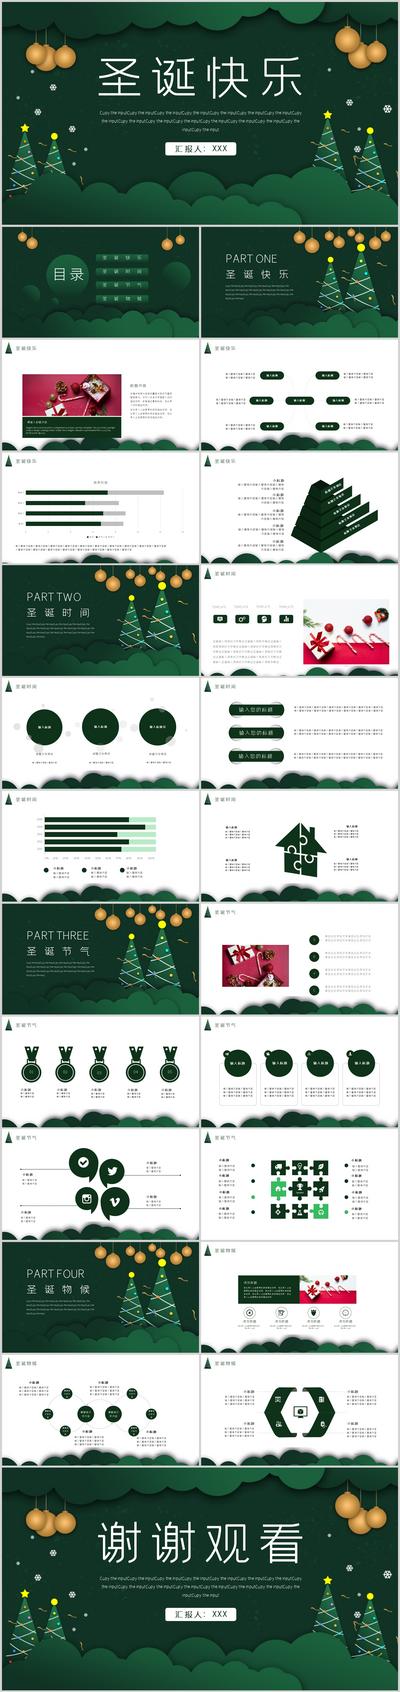 南门网 PPT 公历节日  圣诞节 主题 活动 策划 插画